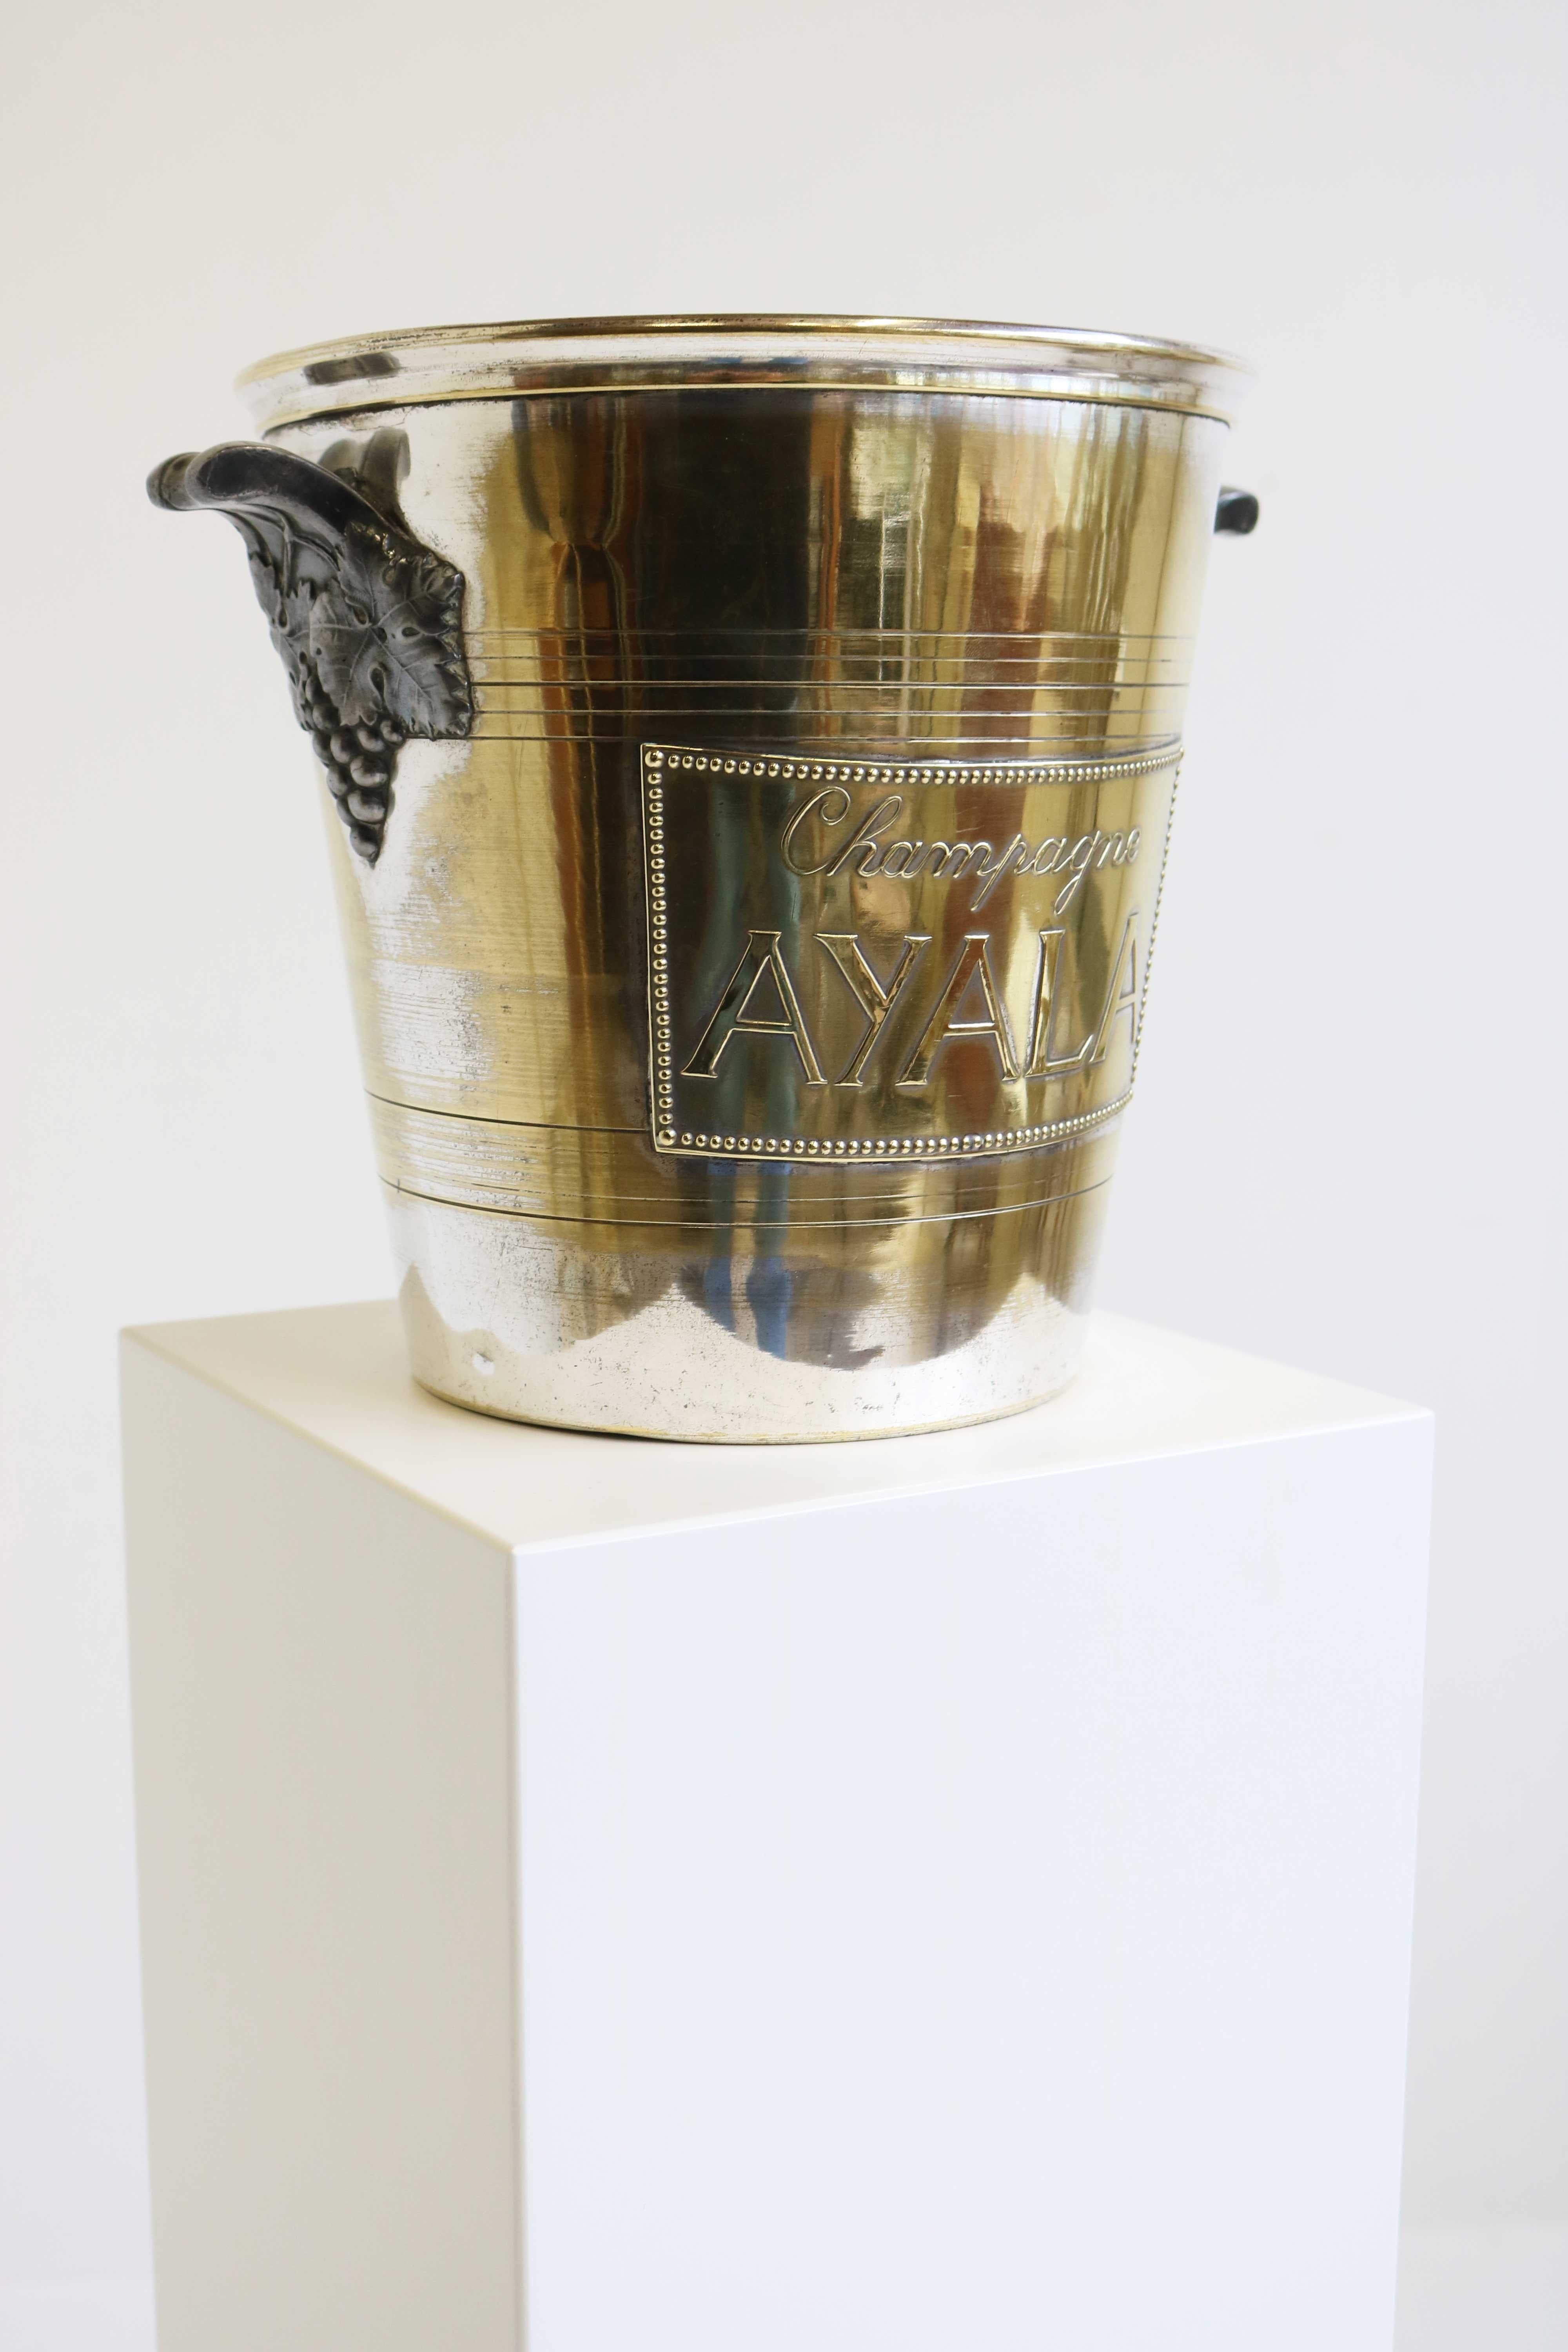 Ayala / Argit Champagne Cooler, Ice Bucket, Wine Cooler, France, Art Deco 1930s In Good Condition In Ijzendijke, NL